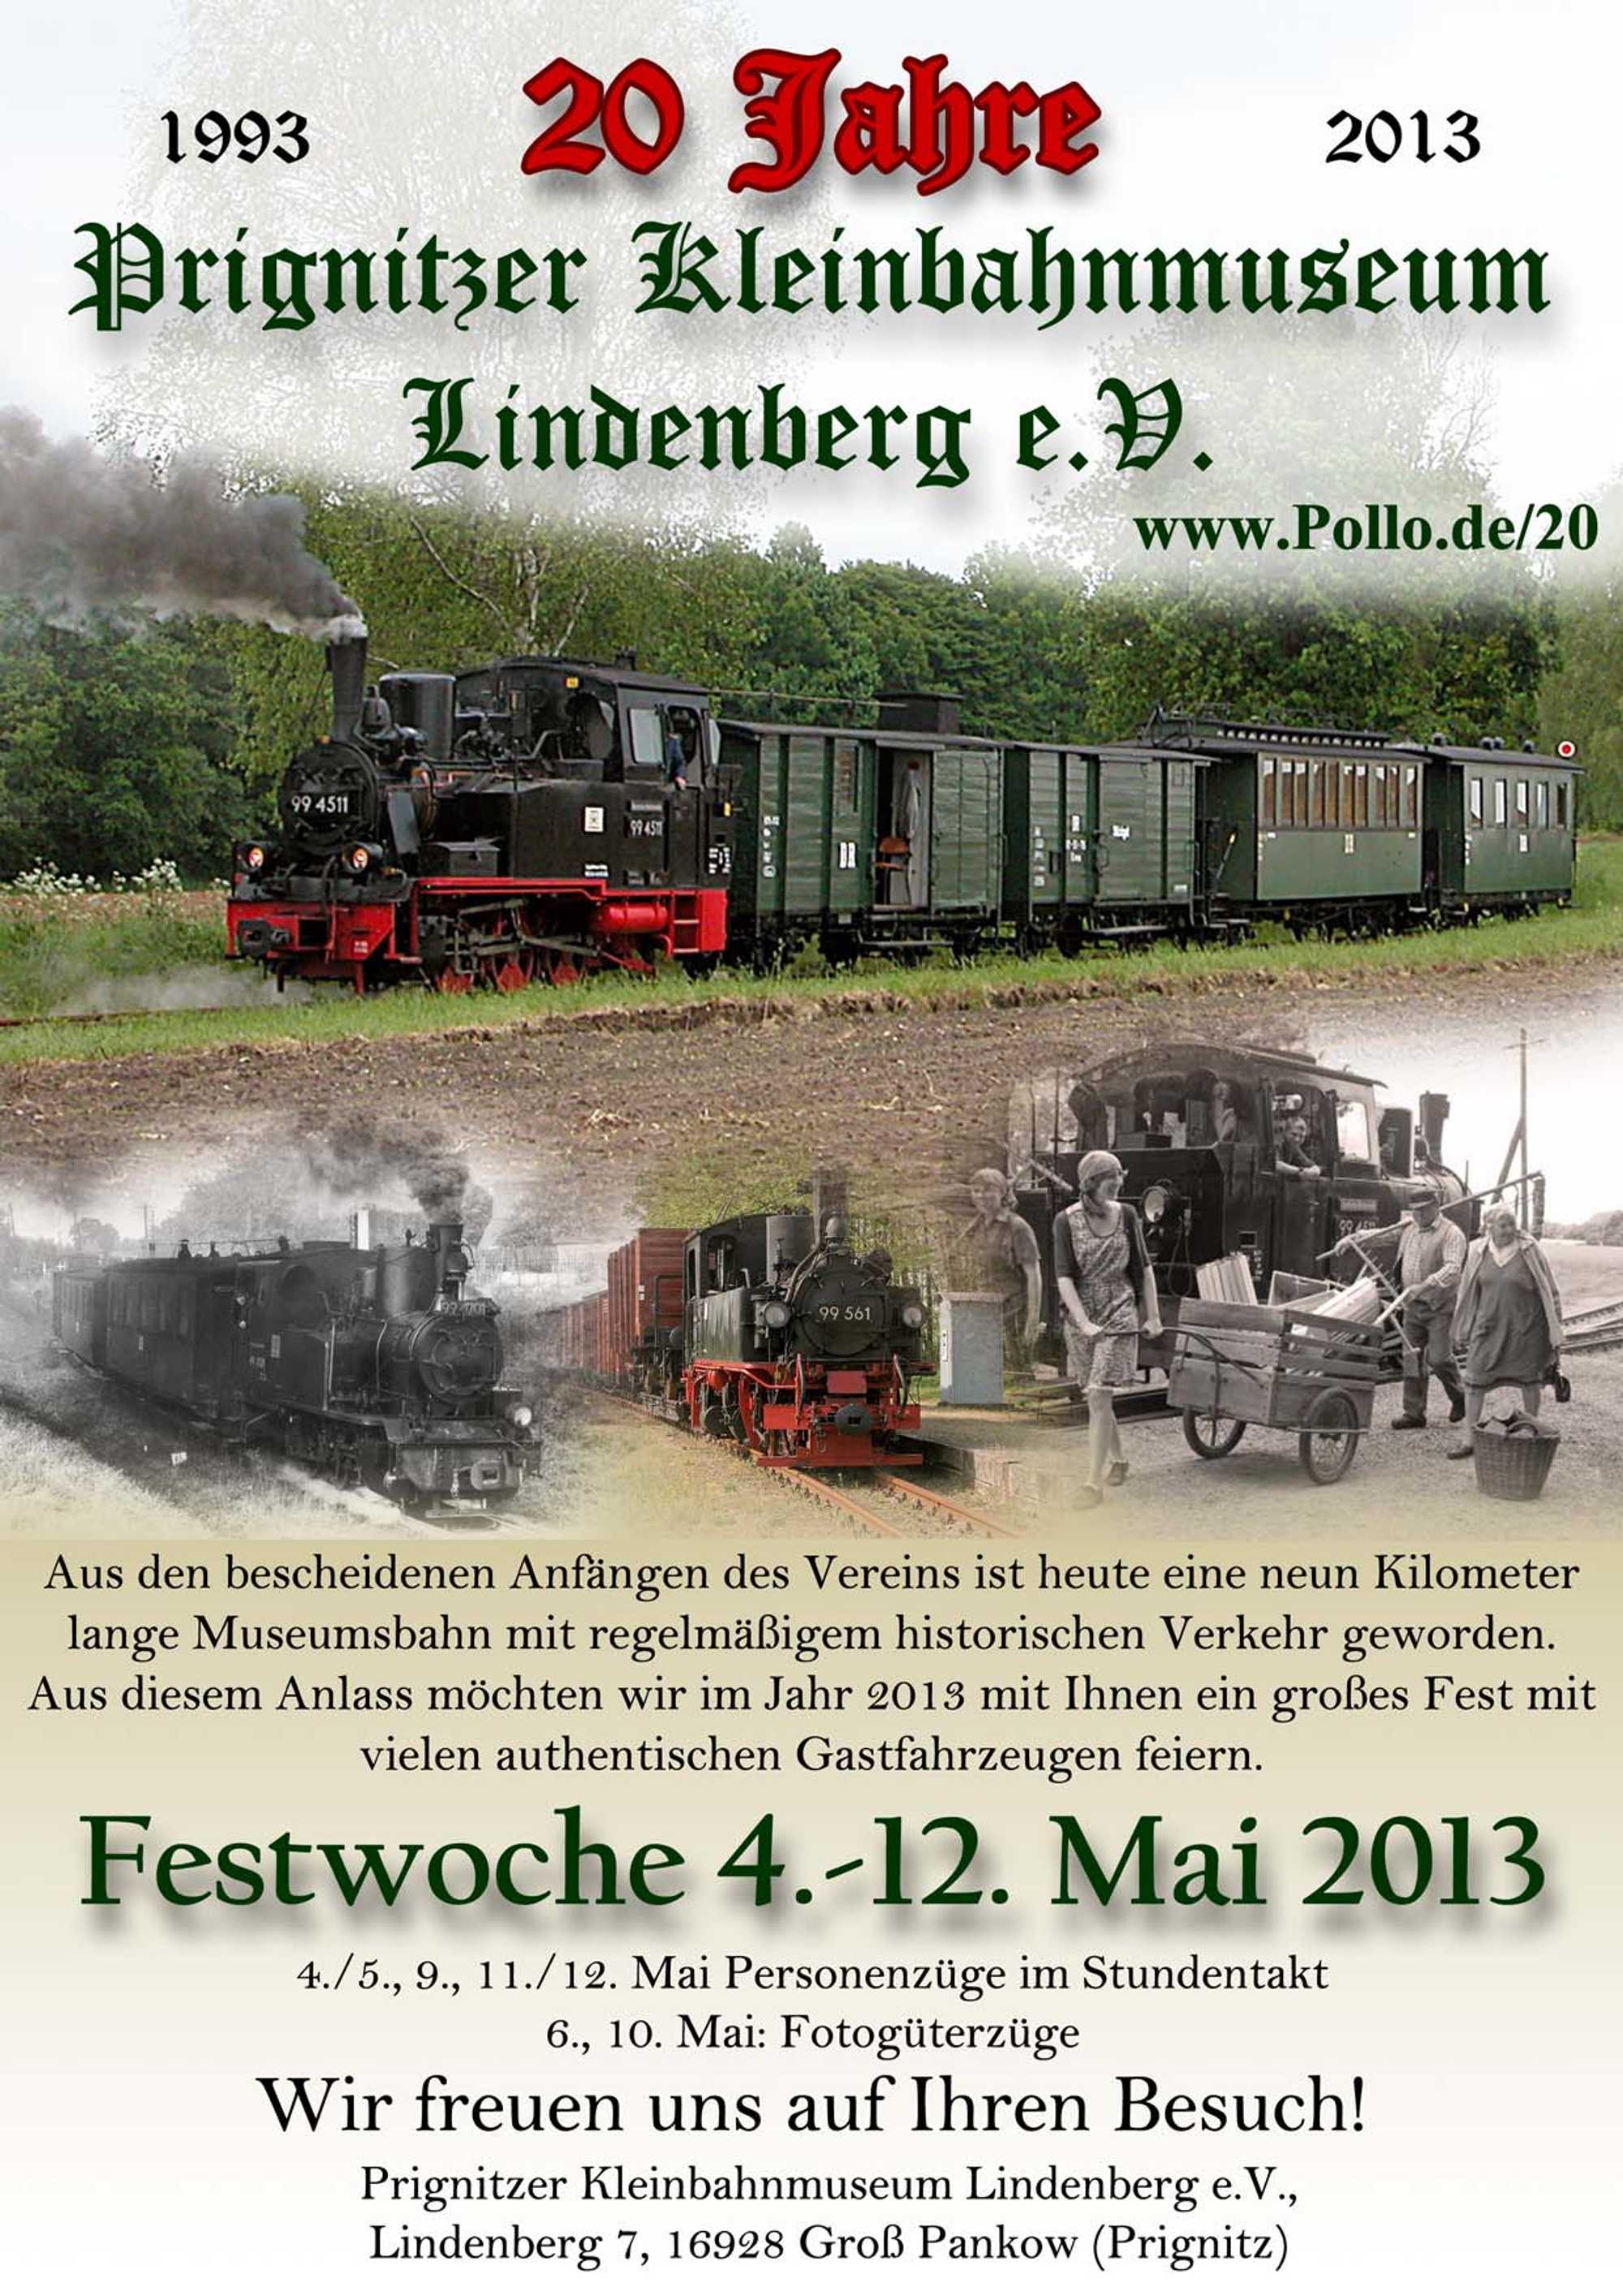 Veranstaltungsankündigung 20 Jahre Verein Prignitzer Kleinbahnmuseum Lindenberg e.V. mit Festwoche vom 4. bis zum 12. Mai 2013